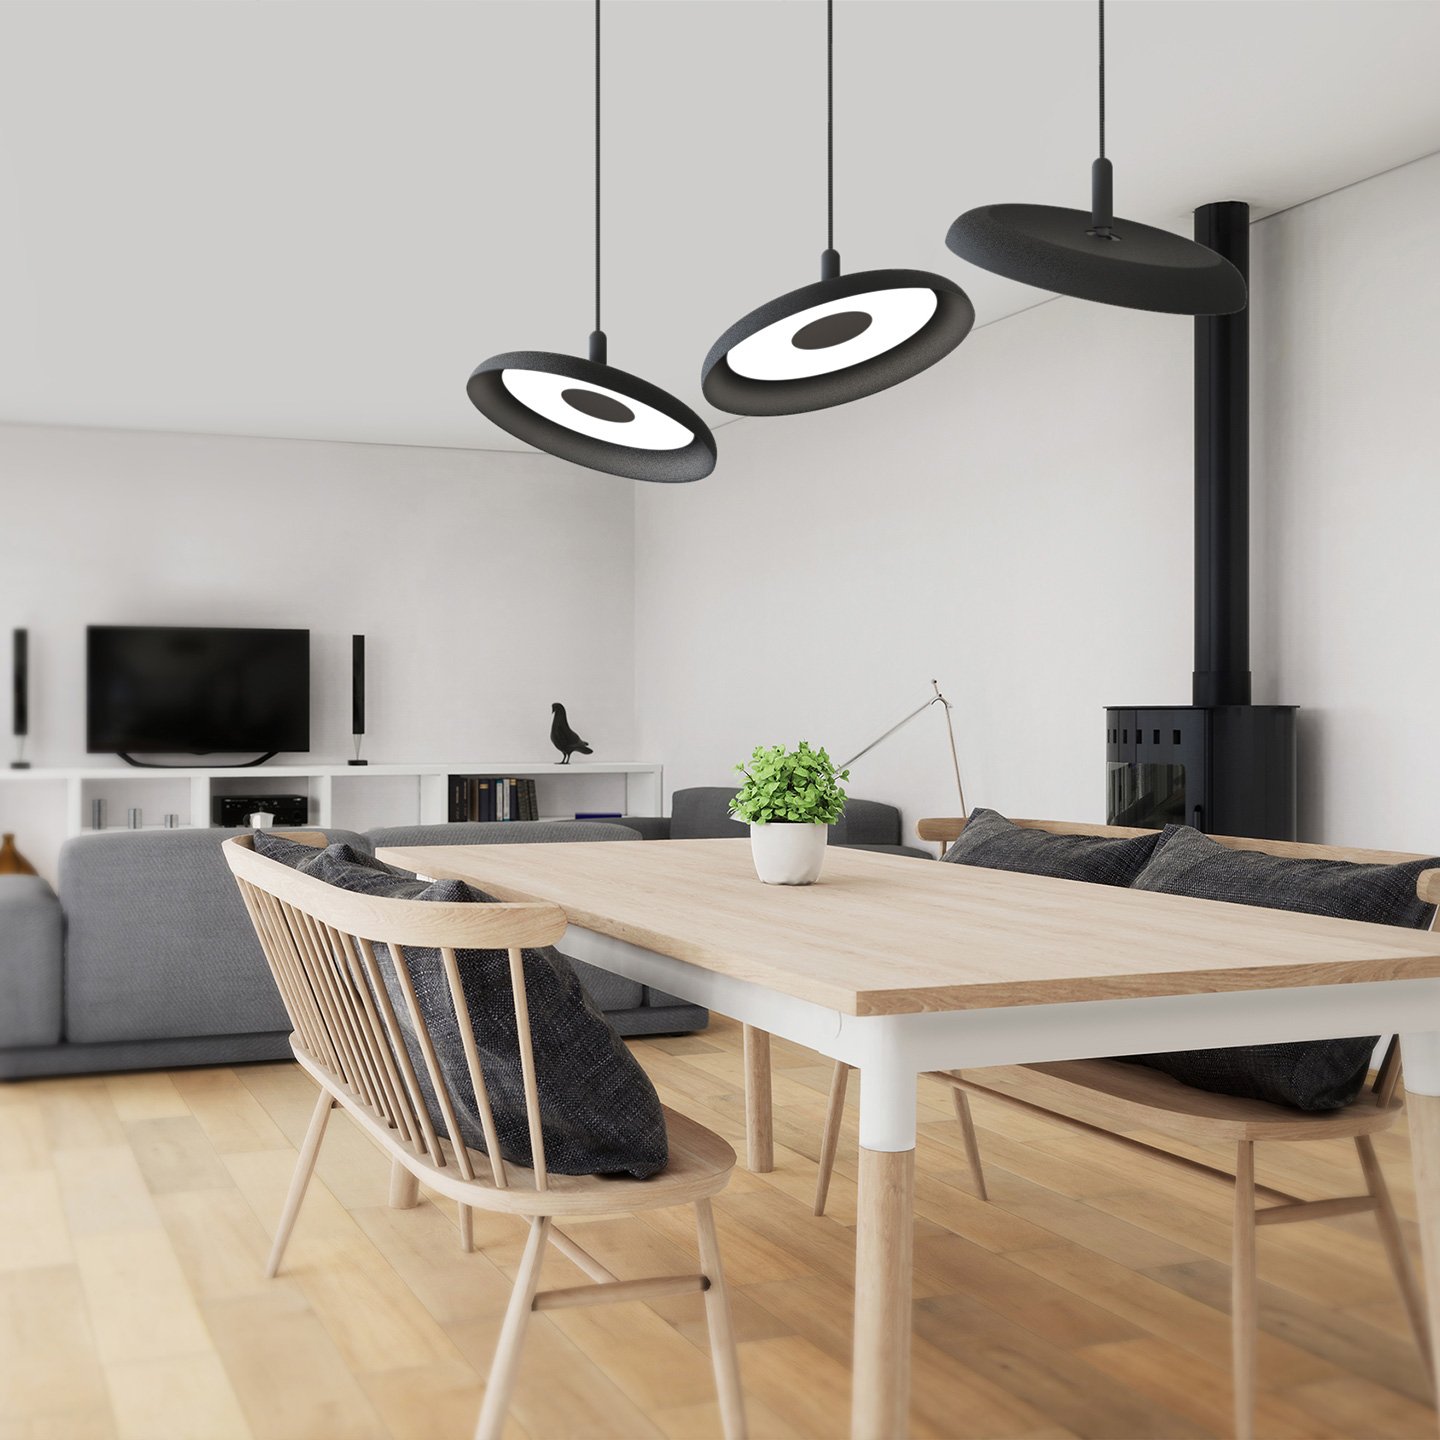 Nivél es un sistema de iluminación LED que permite controlar la luz en cualquier espacio.